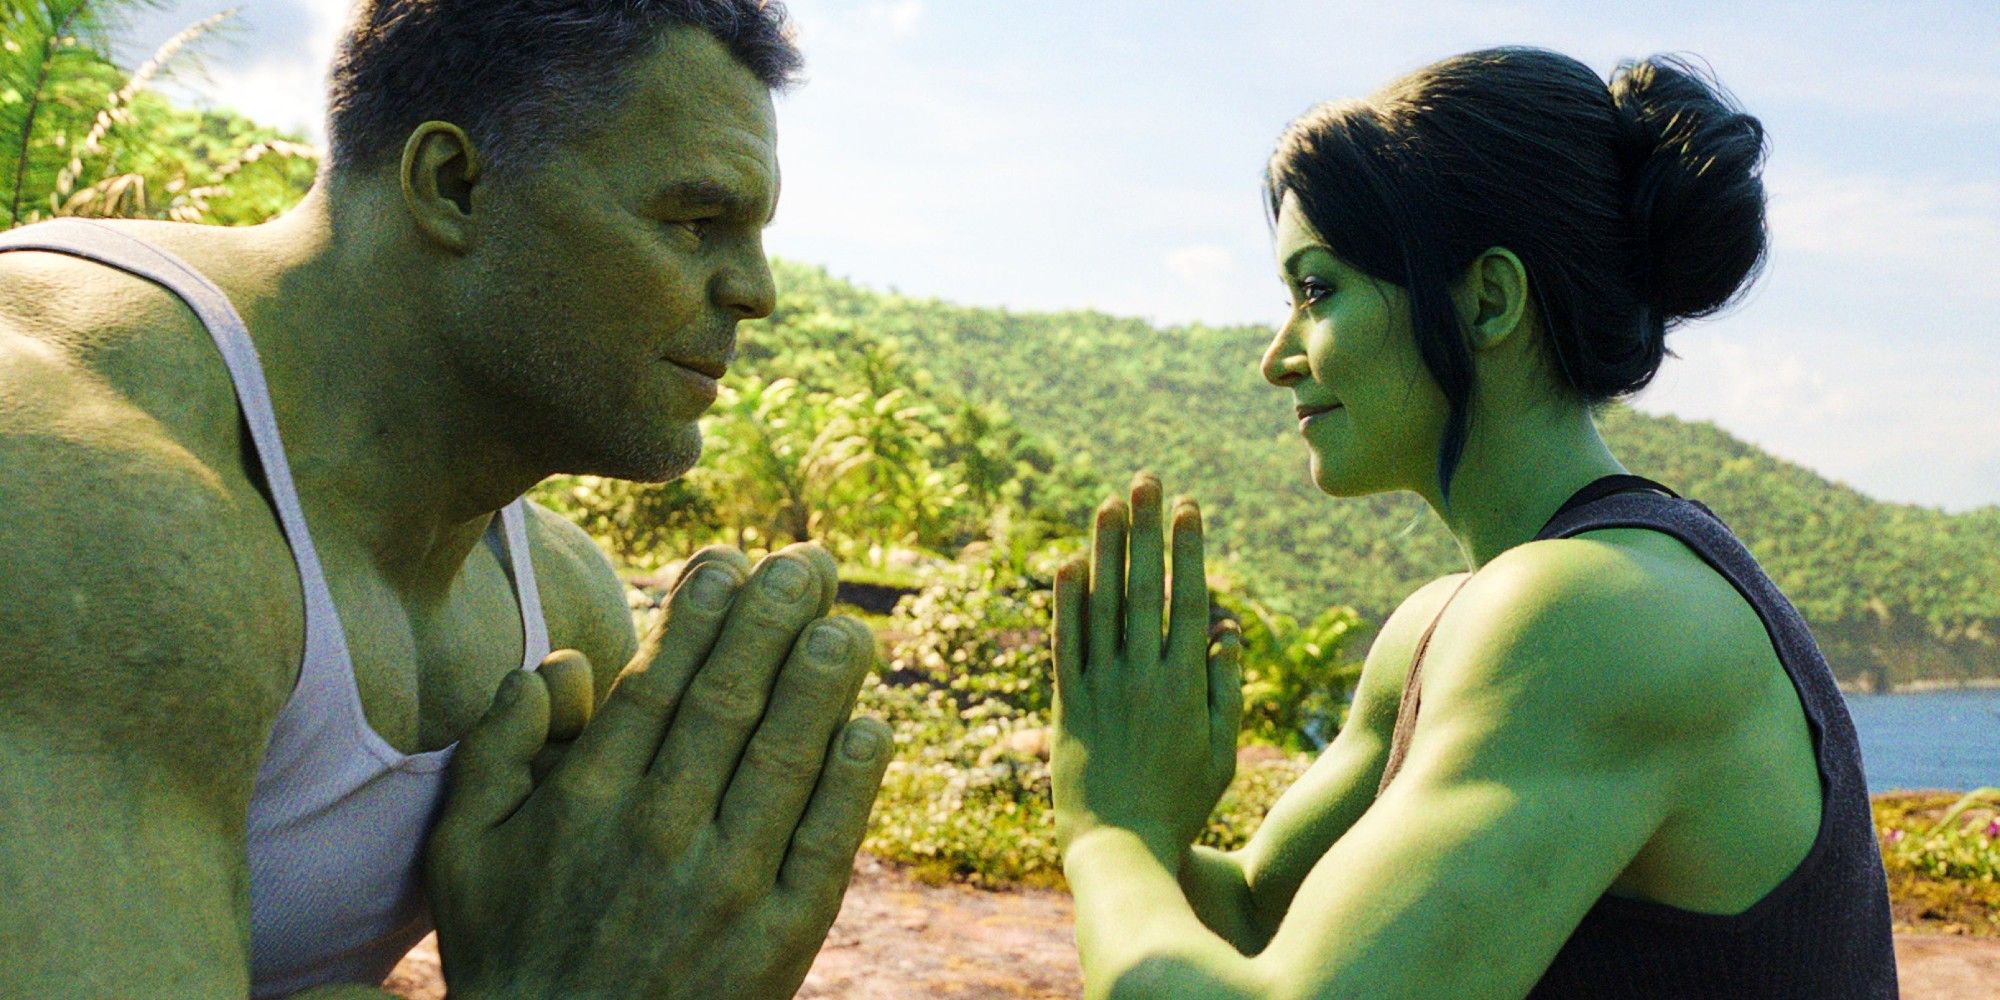 Mark Ruffalo as Hulk and Tatiana Maslany as She-Hulk facing each other